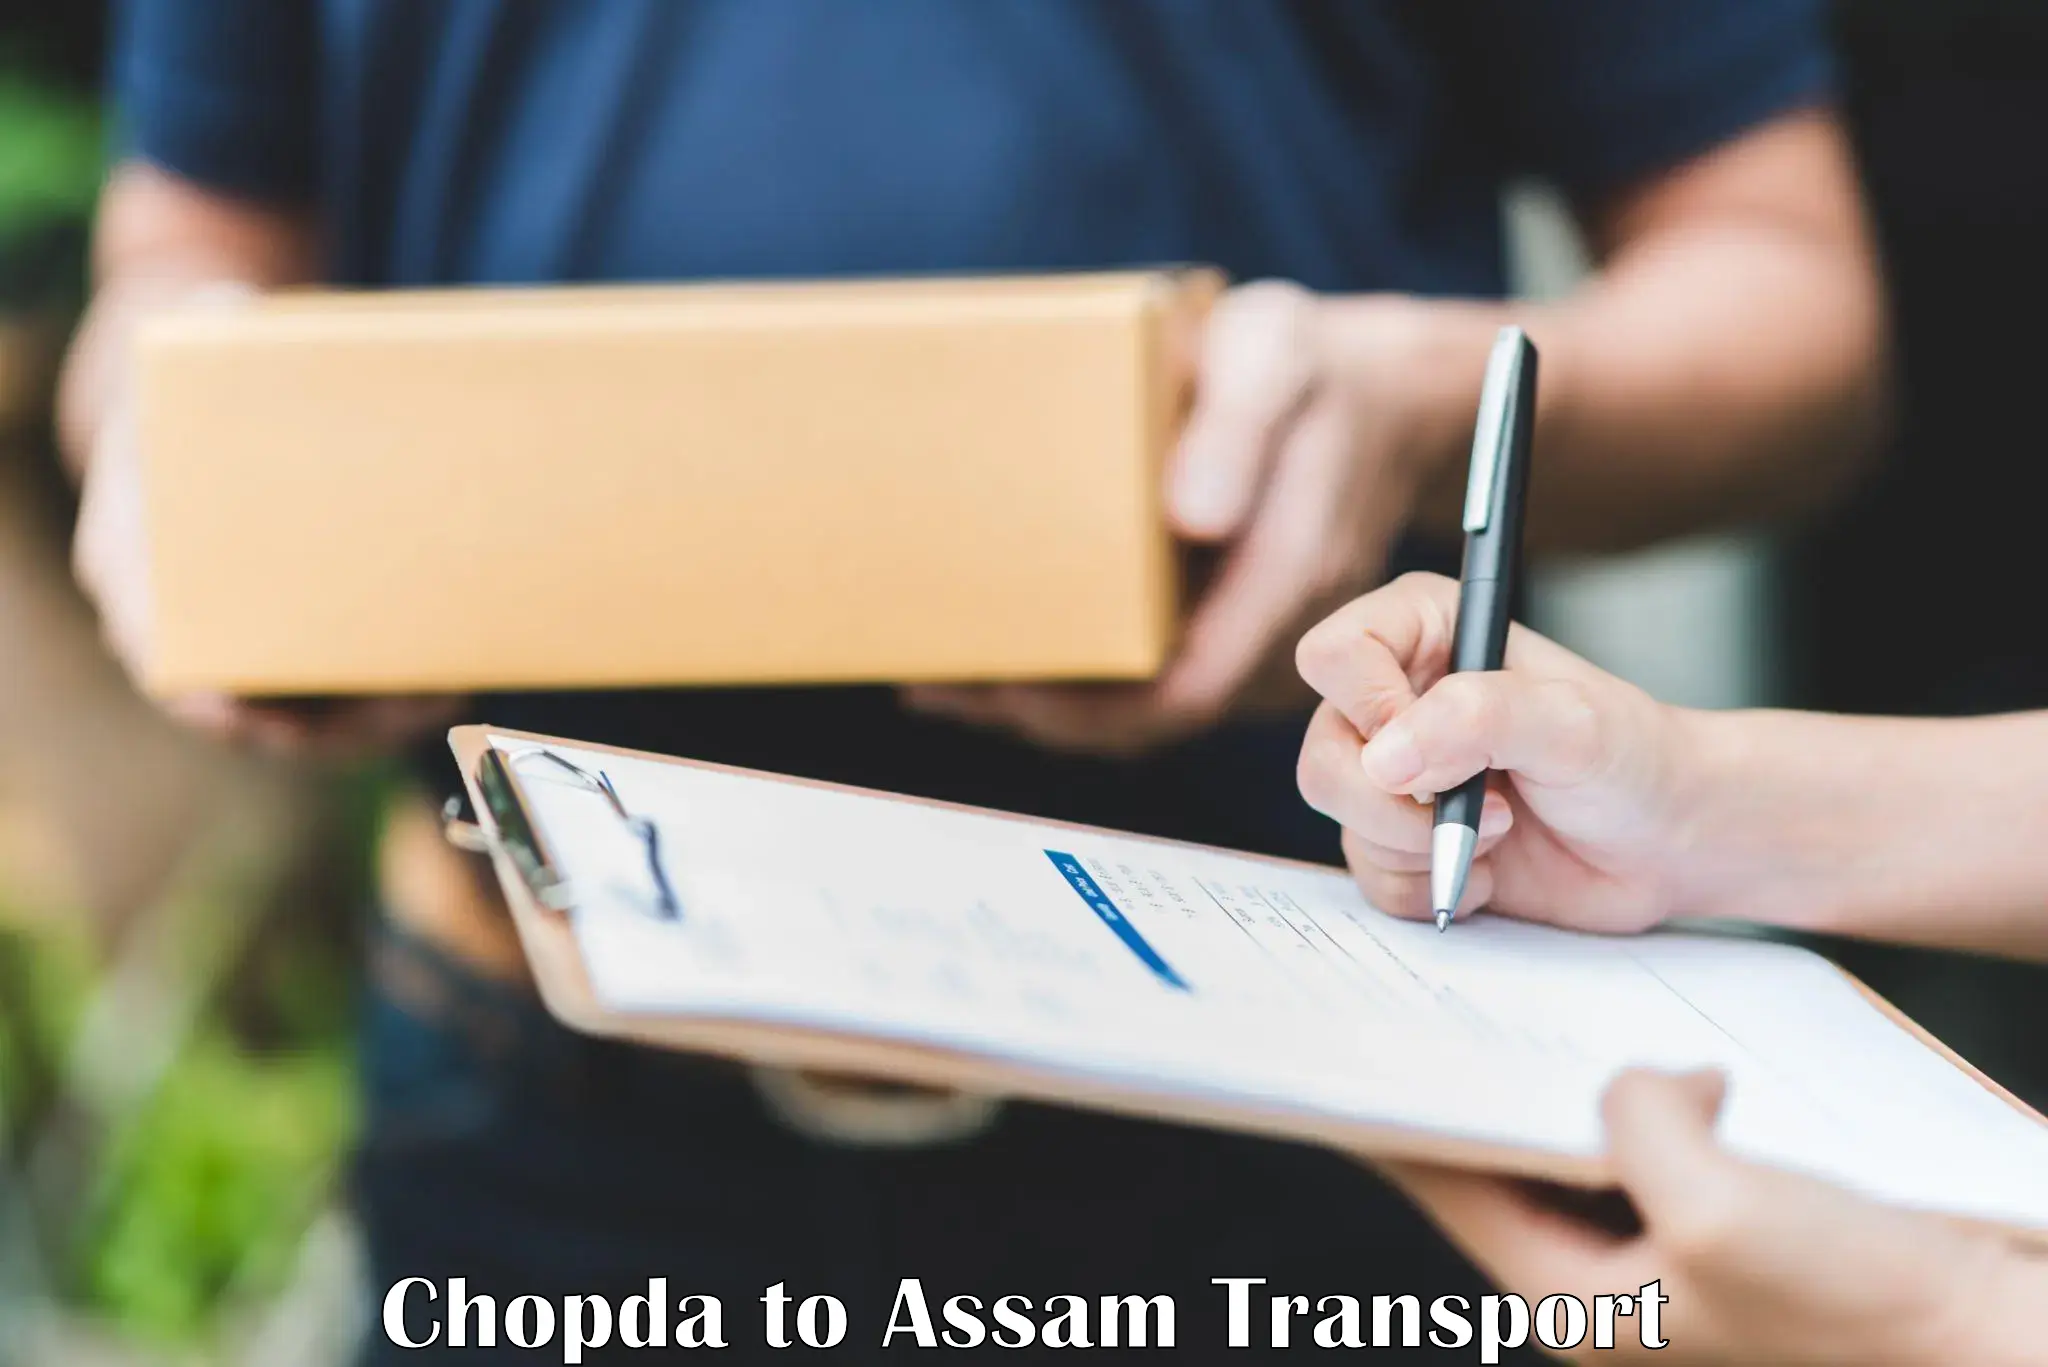 Transport shared services Chopda to Assam